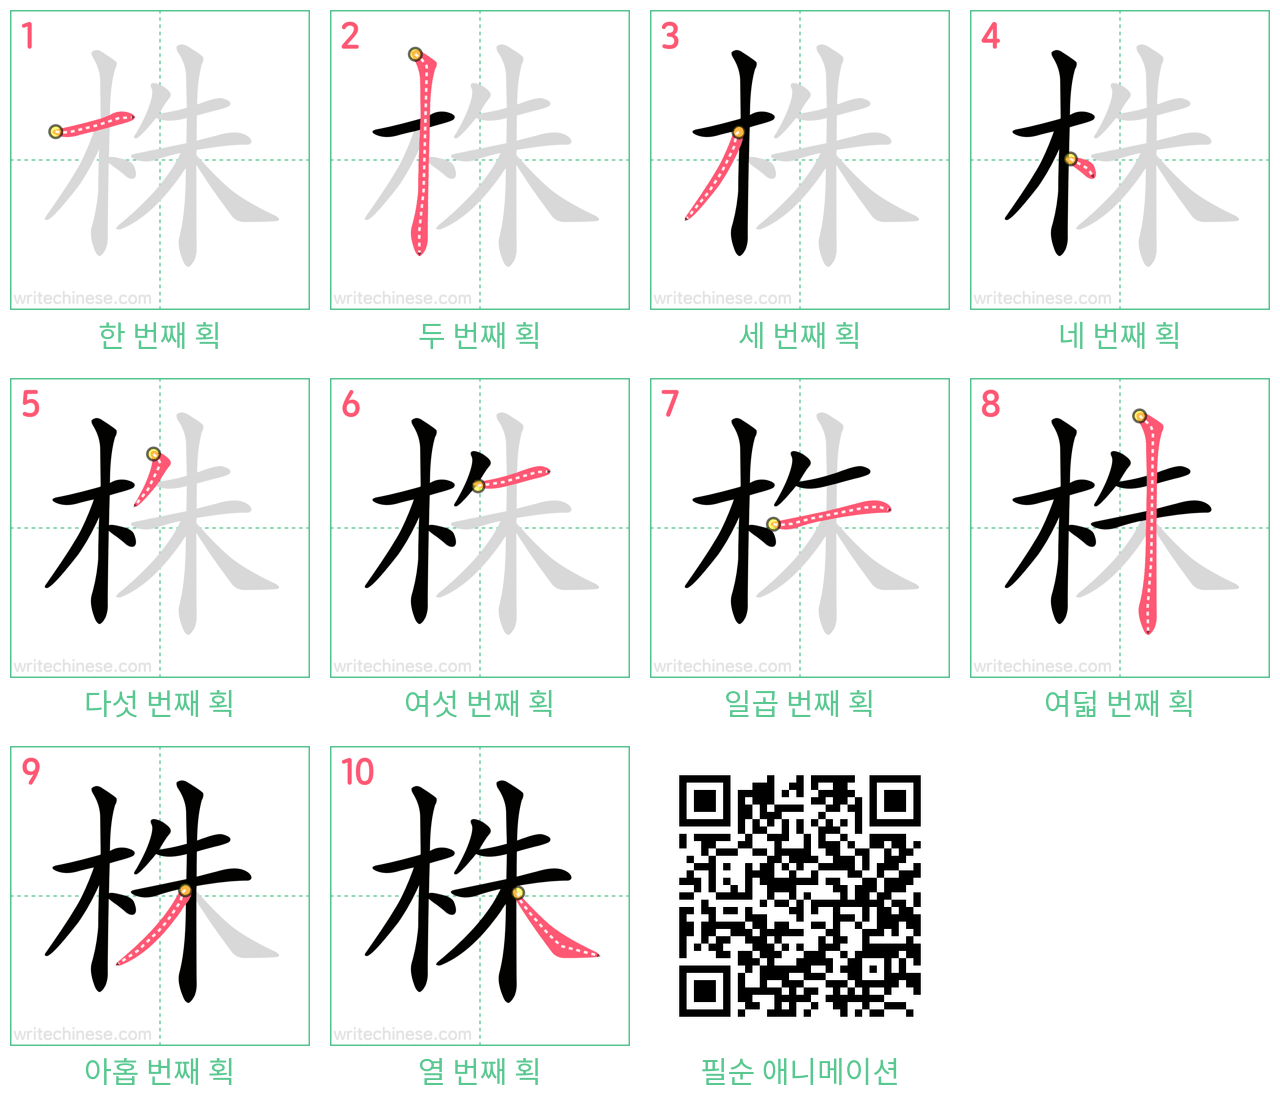 株 step-by-step stroke order diagrams